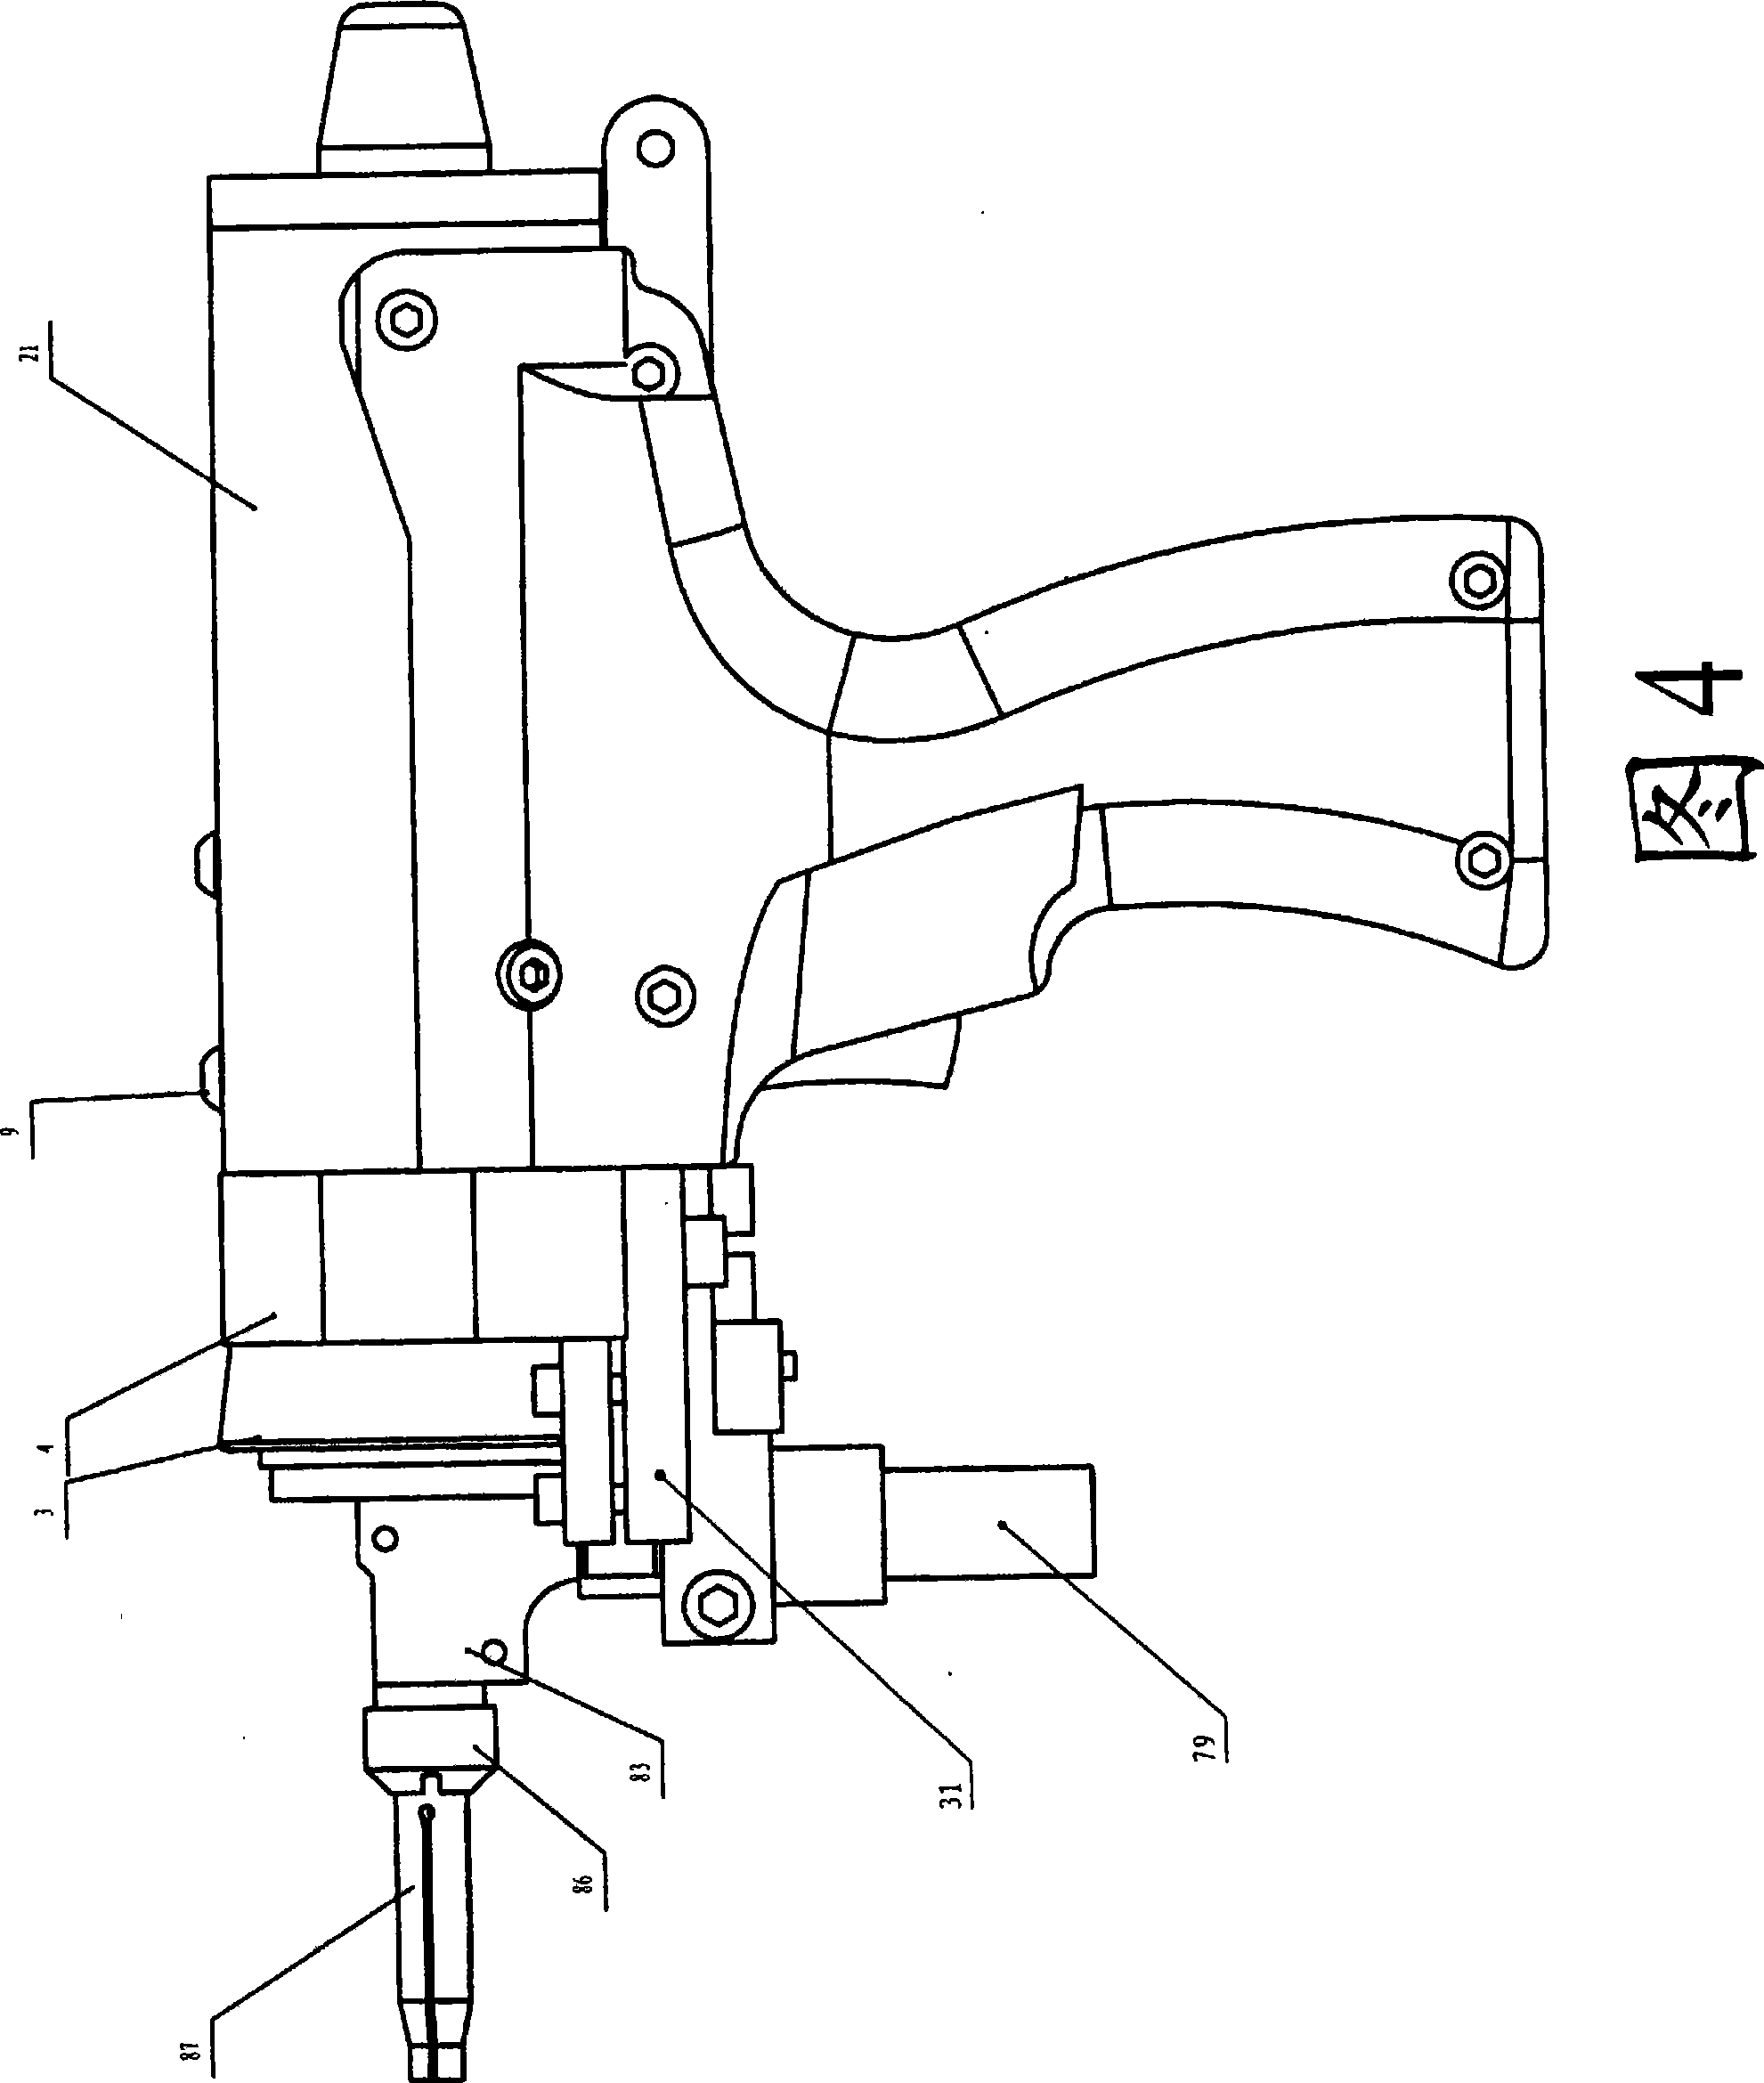 Arc discharge type double-screw bolt welding gun